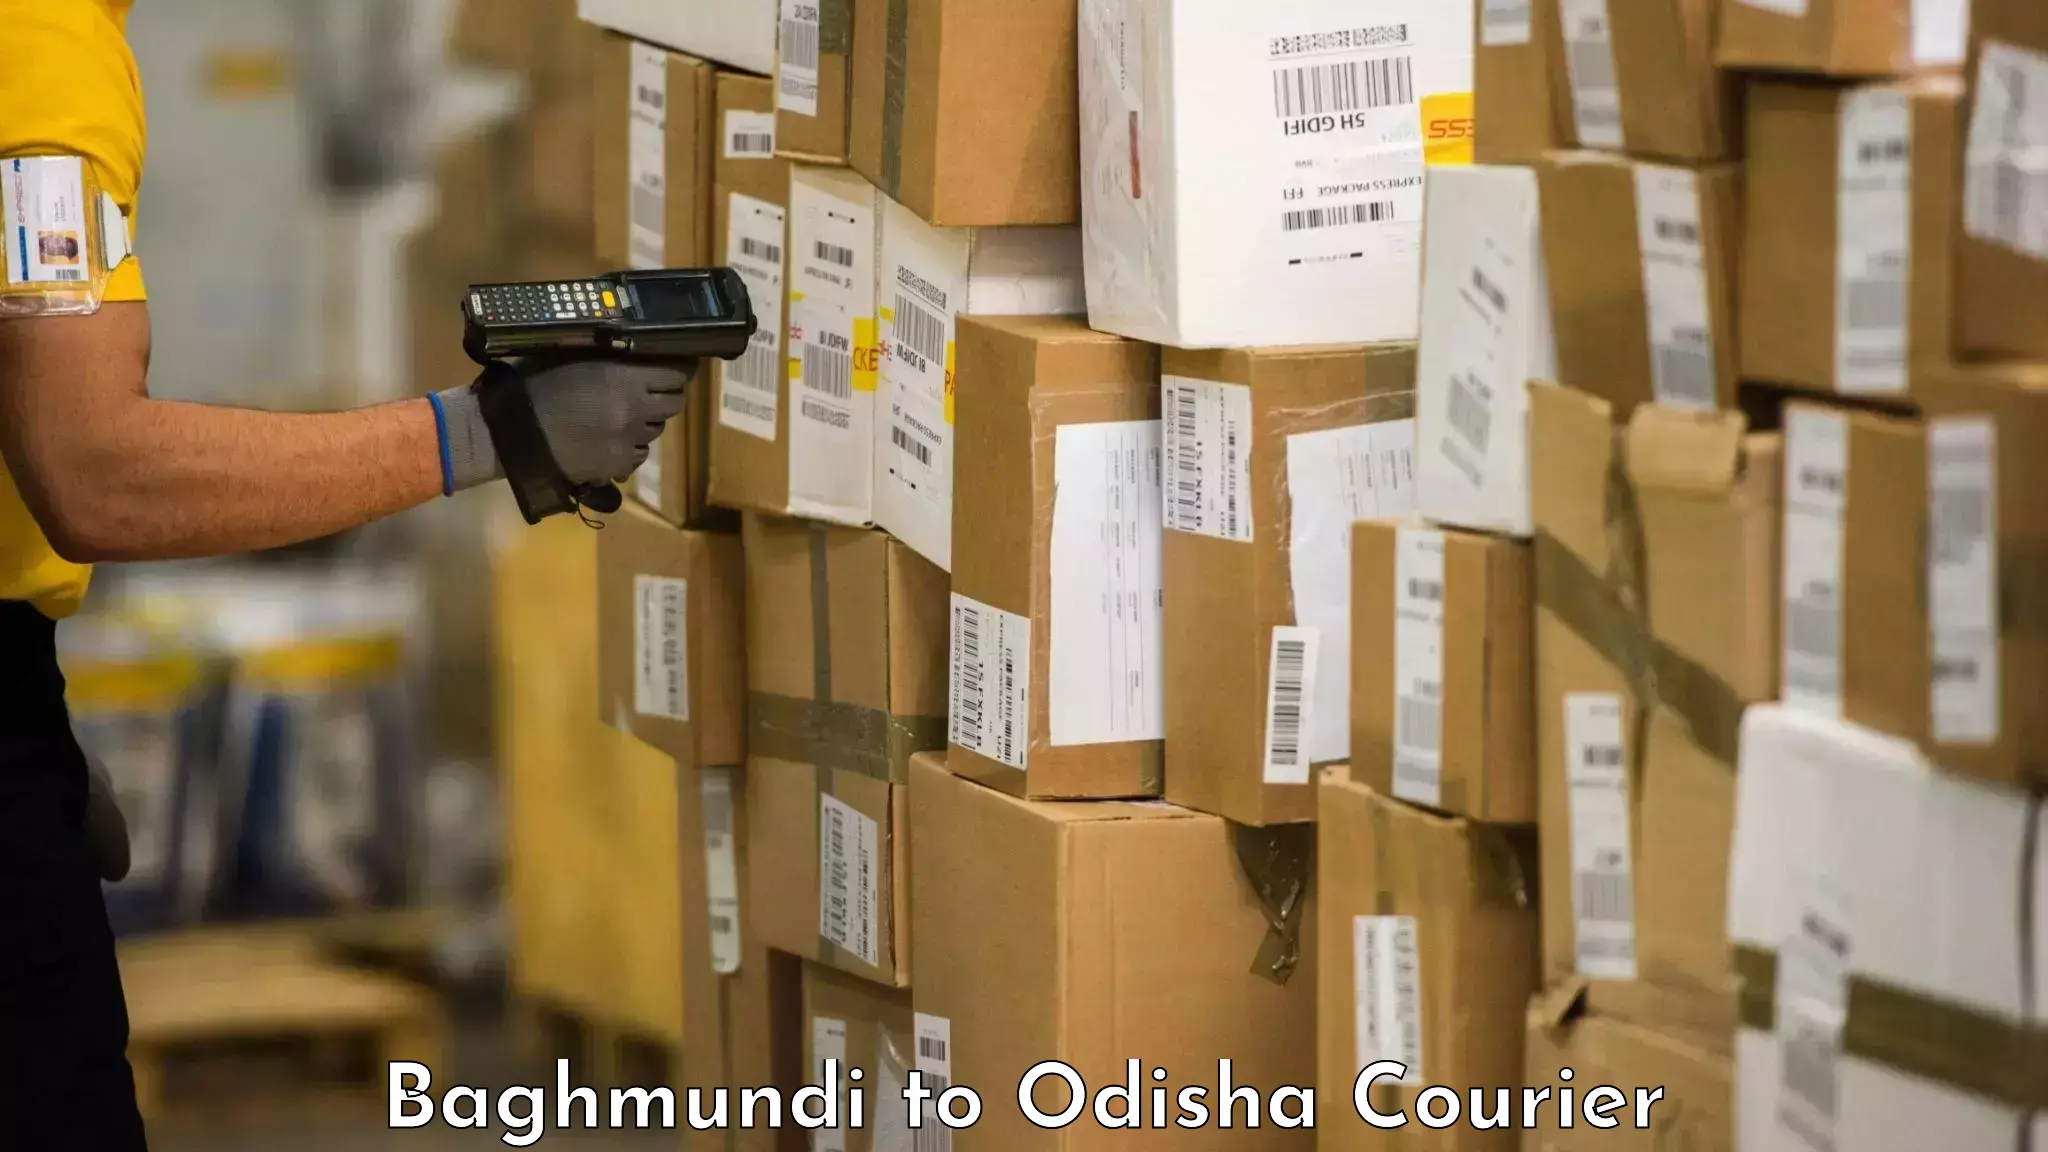 Baggage transport updates in Baghmundi to Muniguda